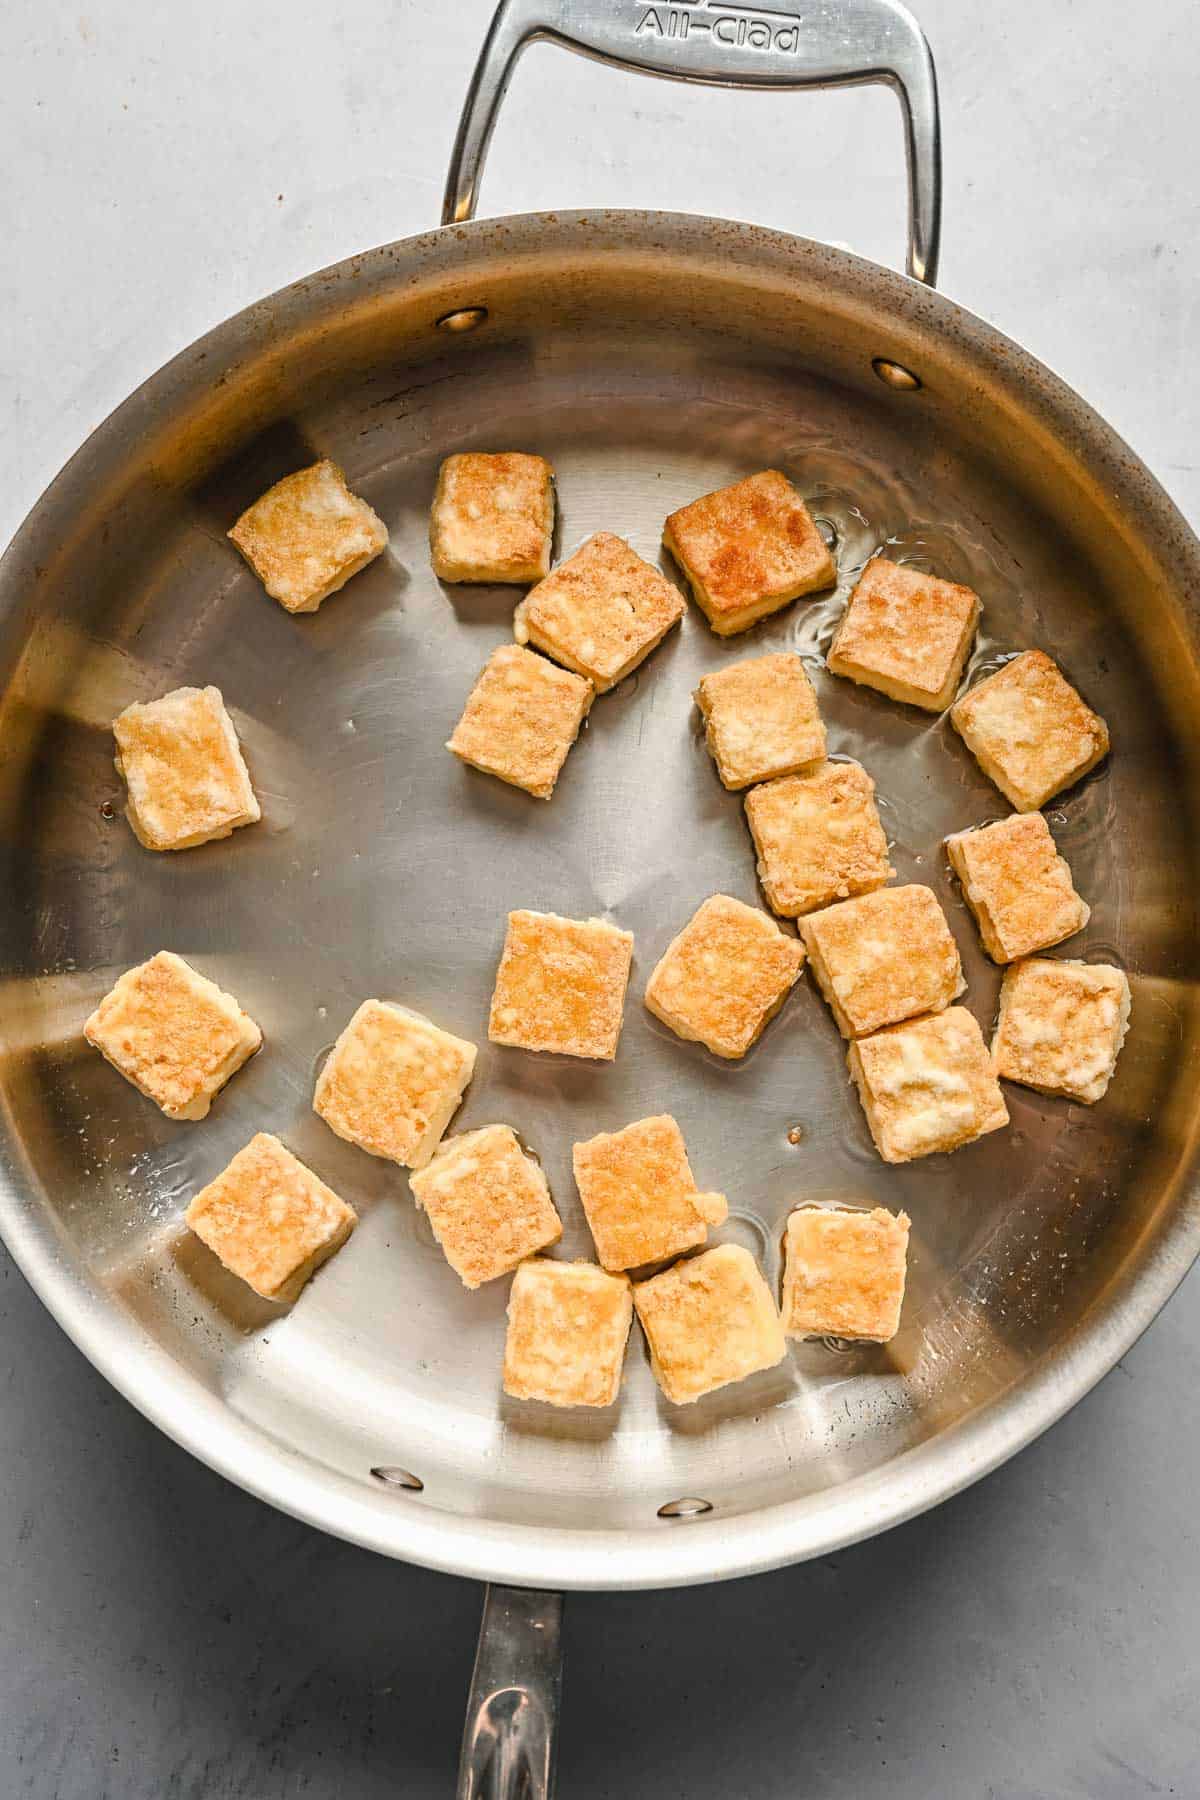 Browned cubed tofu in a metal skillet.